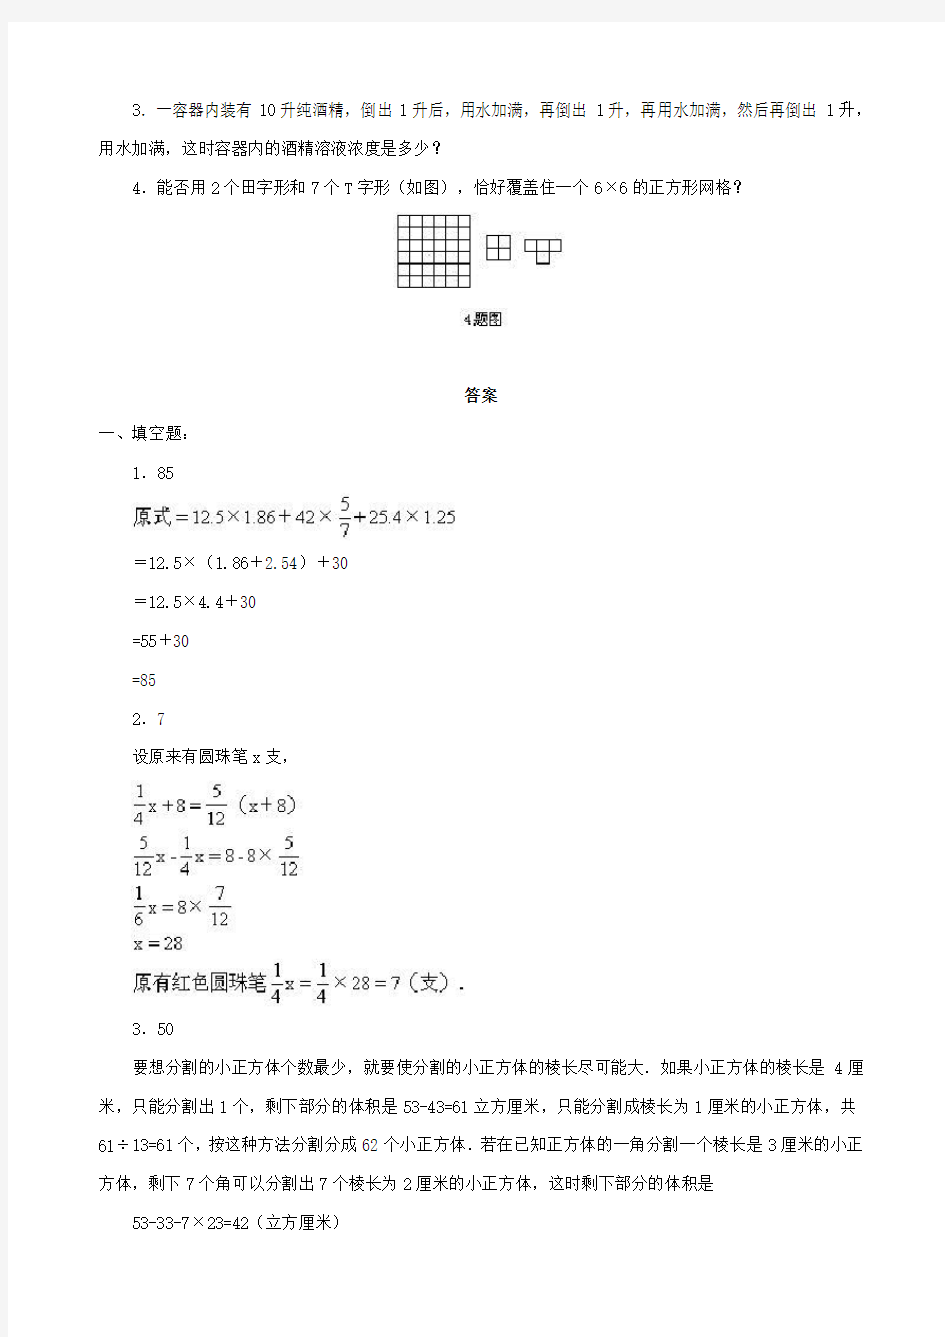 小升初数学综合模拟试卷答案及详细解析(27)